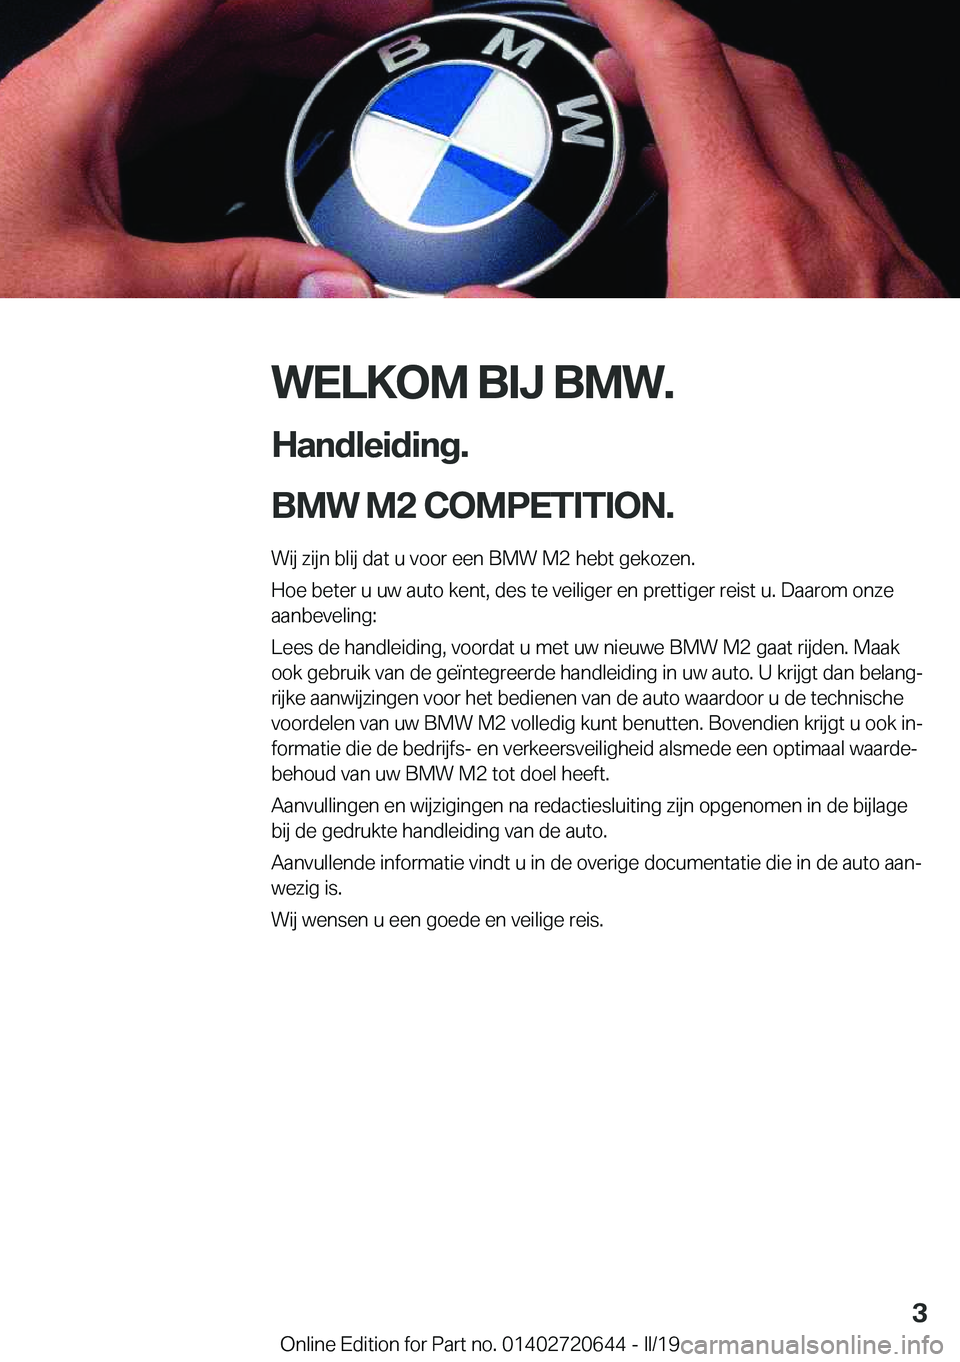 BMW M2 2020  Instructieboekjes (in Dutch) �W�E�L�K�O�M��B�I�J��B�M�W�.
�H�a�n�d�l�e�i�d�i�n�g�.
�B�M�W��M�2��C�O�M�P�E�T�I�T�I�O�N�.� �W�i�j��z�i�j�n��b�l�i�j��d�a�t��u��v�o�o�r��e�e�n��B�M�W��M�2��h�e�b�t��g�e�k�o�z�e�n�.
�H�o